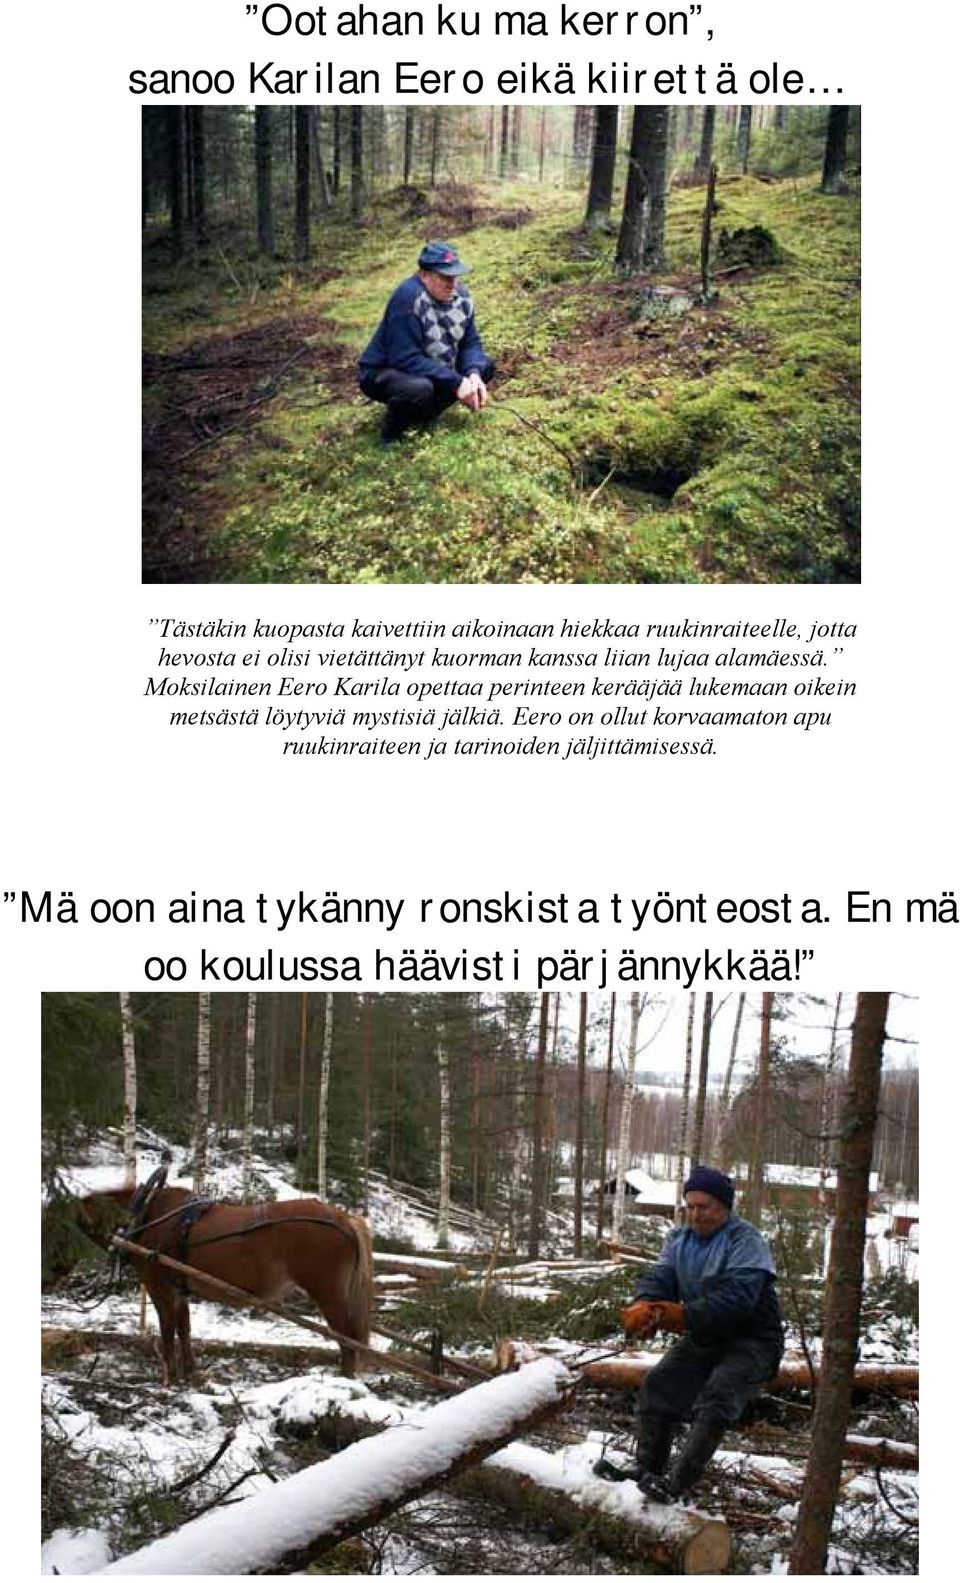 Moksilainen Eero Karila opettaa perinteen kerääjää lukemaan oikein metsästä löytyviä mystisiä jälkiä.